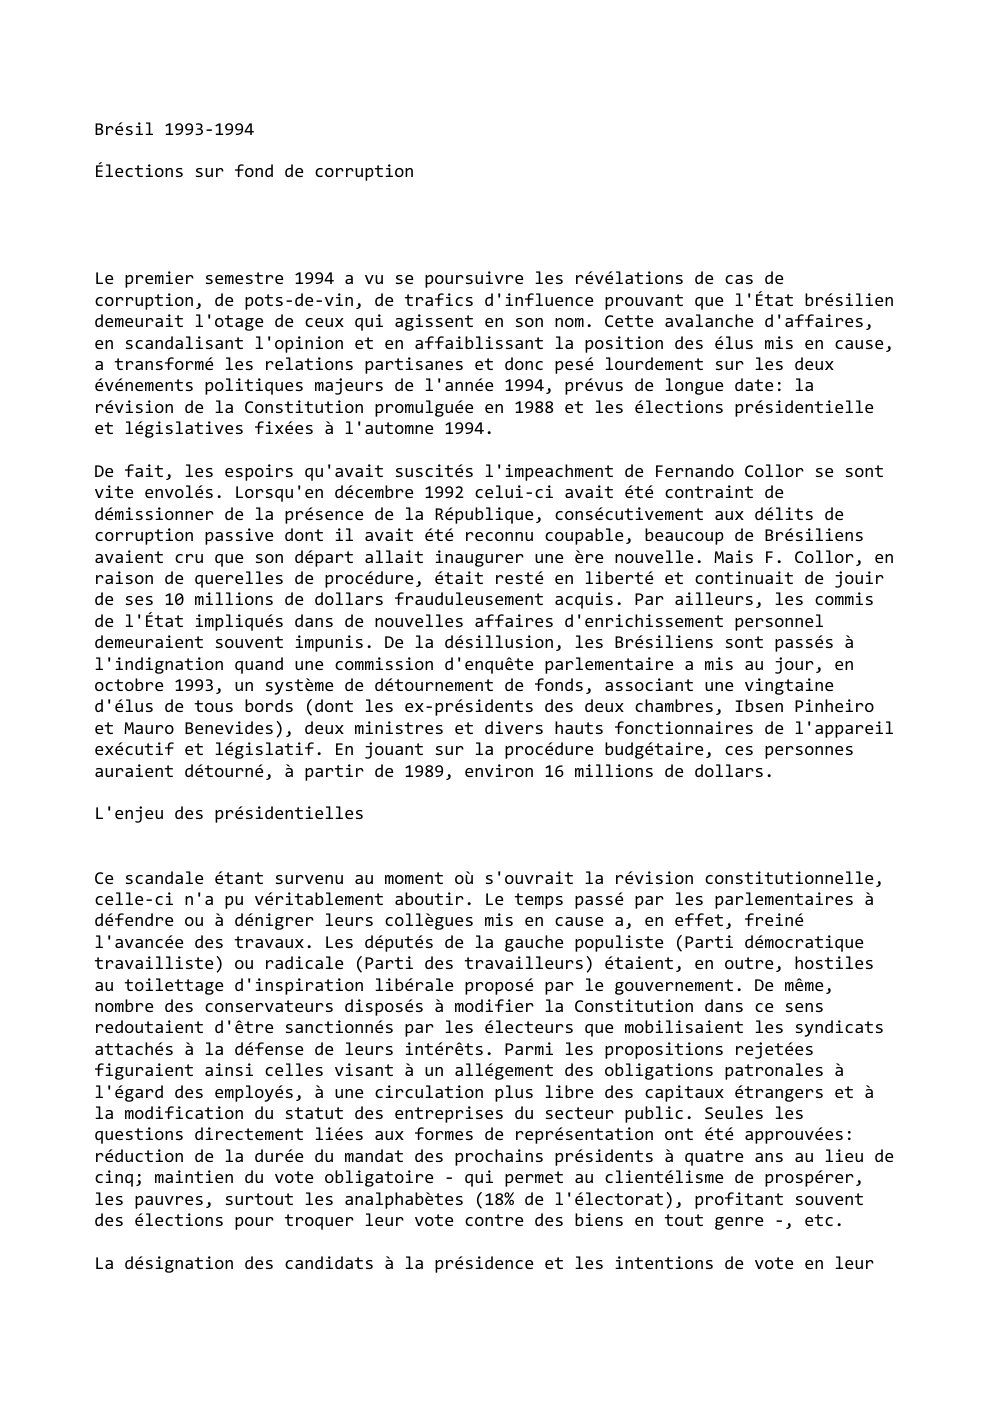 Prévisualisation du document Brésil 1993-1994
Élections sur fond de corruption

Le premier semestre 1994 a vu se poursuivre les révélations de cas de...